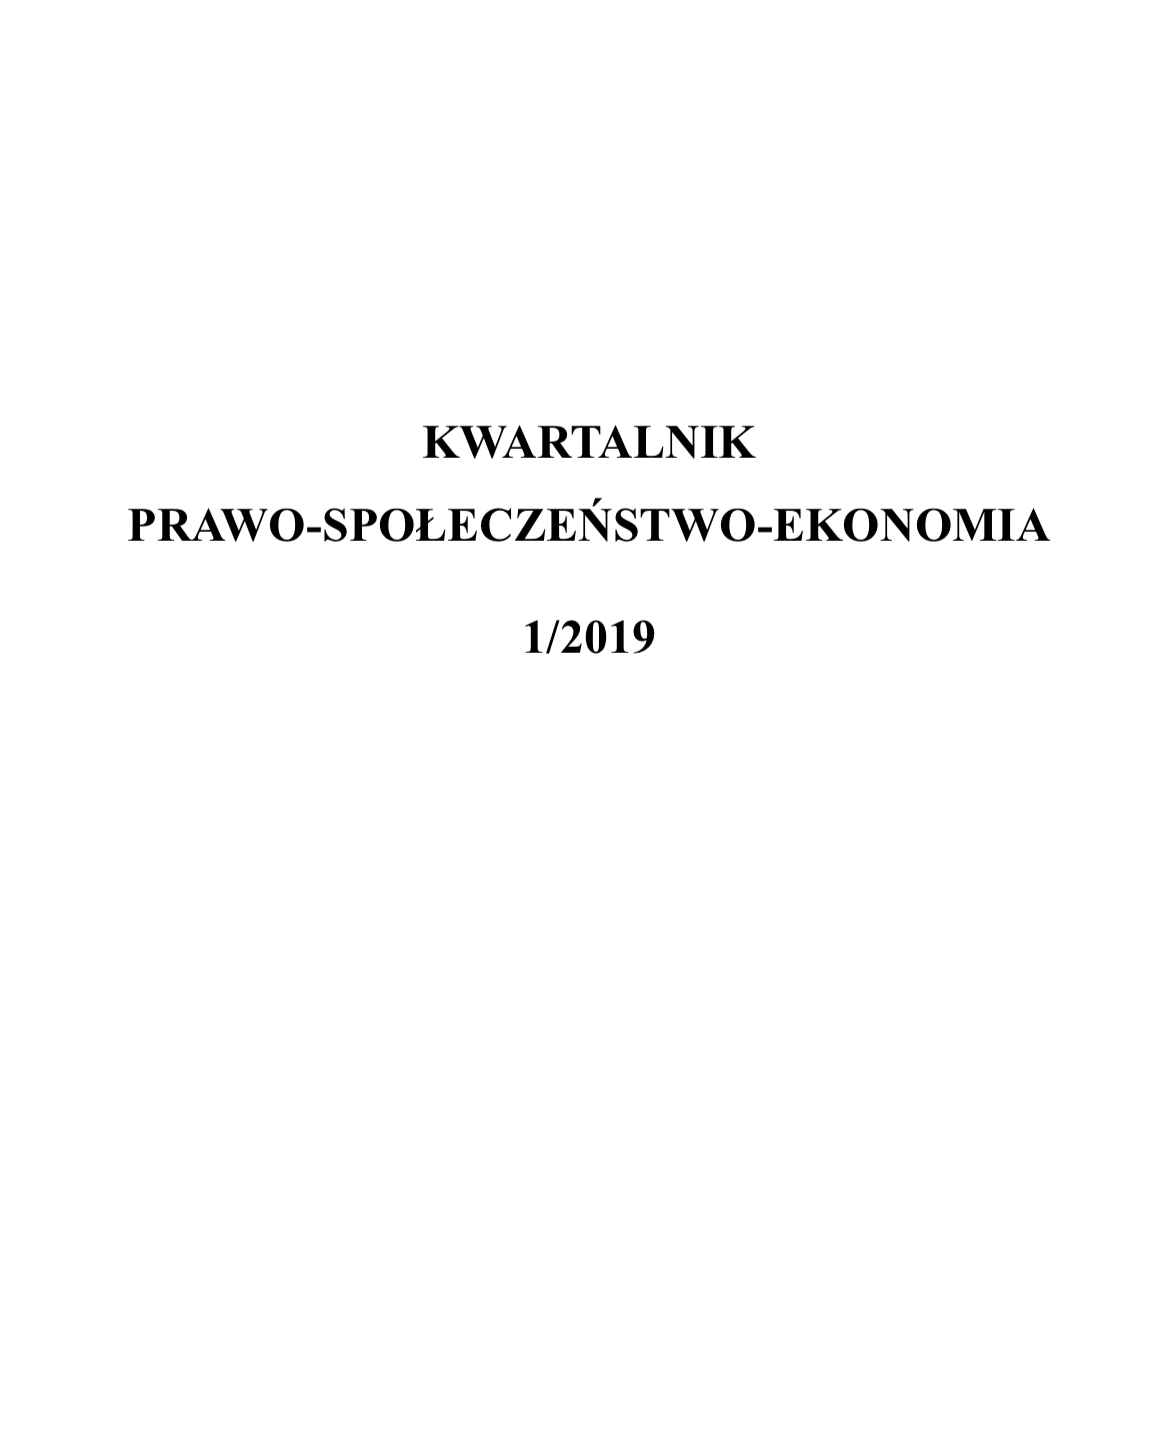 Legitymacja skargowa na gruncie art. 50 § 1 p.p.s.a. w przypadku wprowadzenia do polskiego porządku prawnego umów administracyjnych, subordynacyjnych na wzór rozwiązań z prawa niemieckiego z § 54 VwVfG